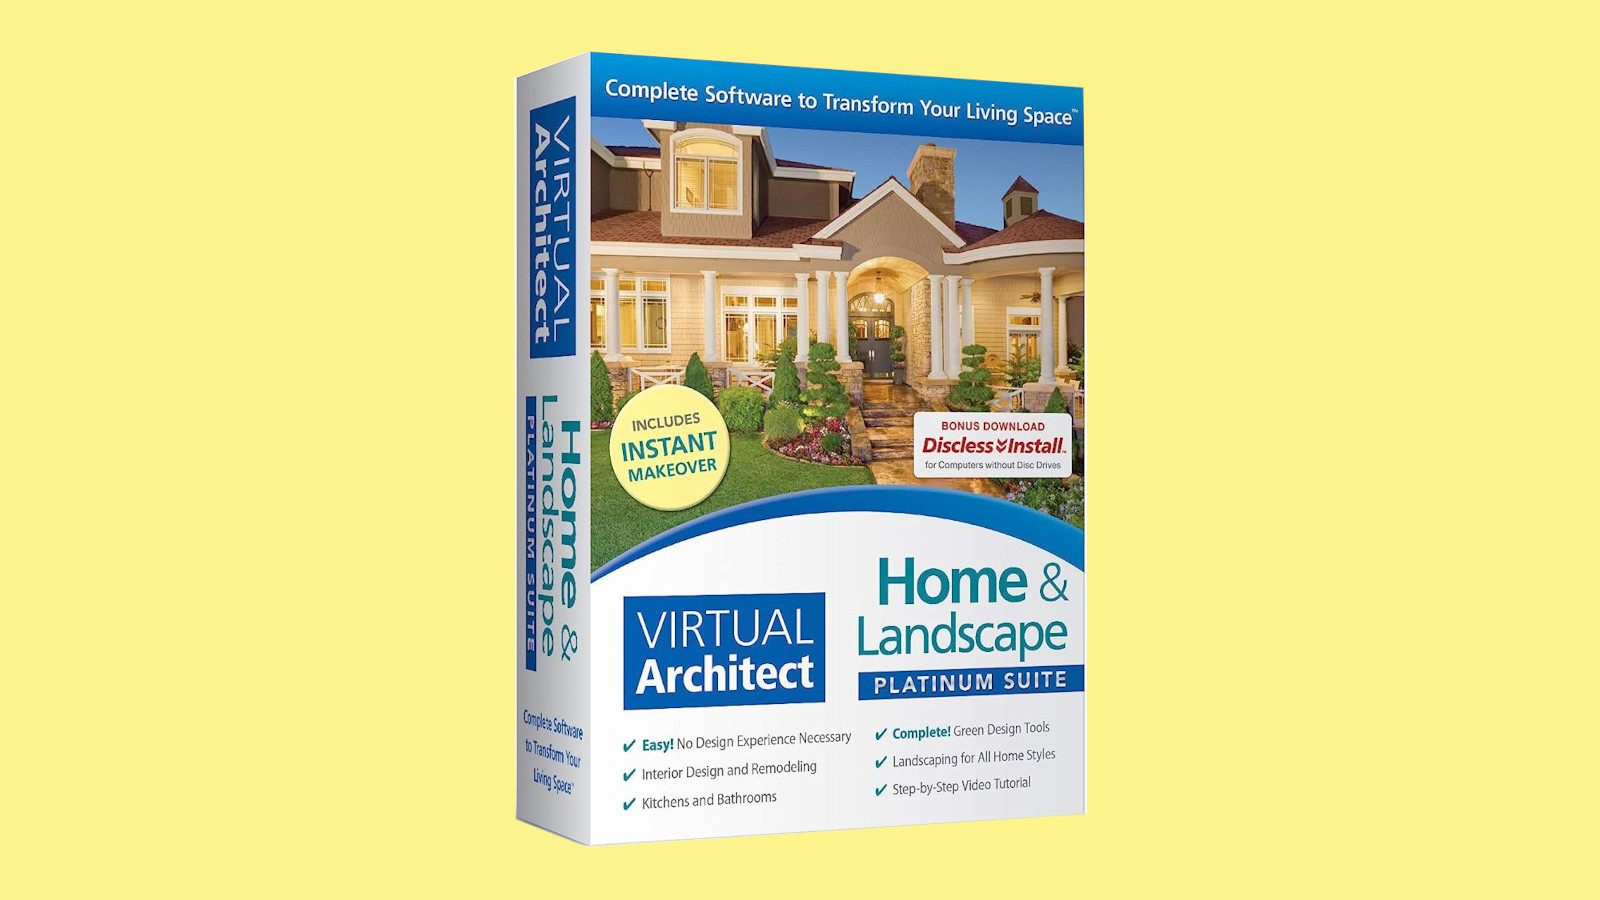 Virtual Architect Home & Landscape Platinum Suite CD Key 103.45 usd